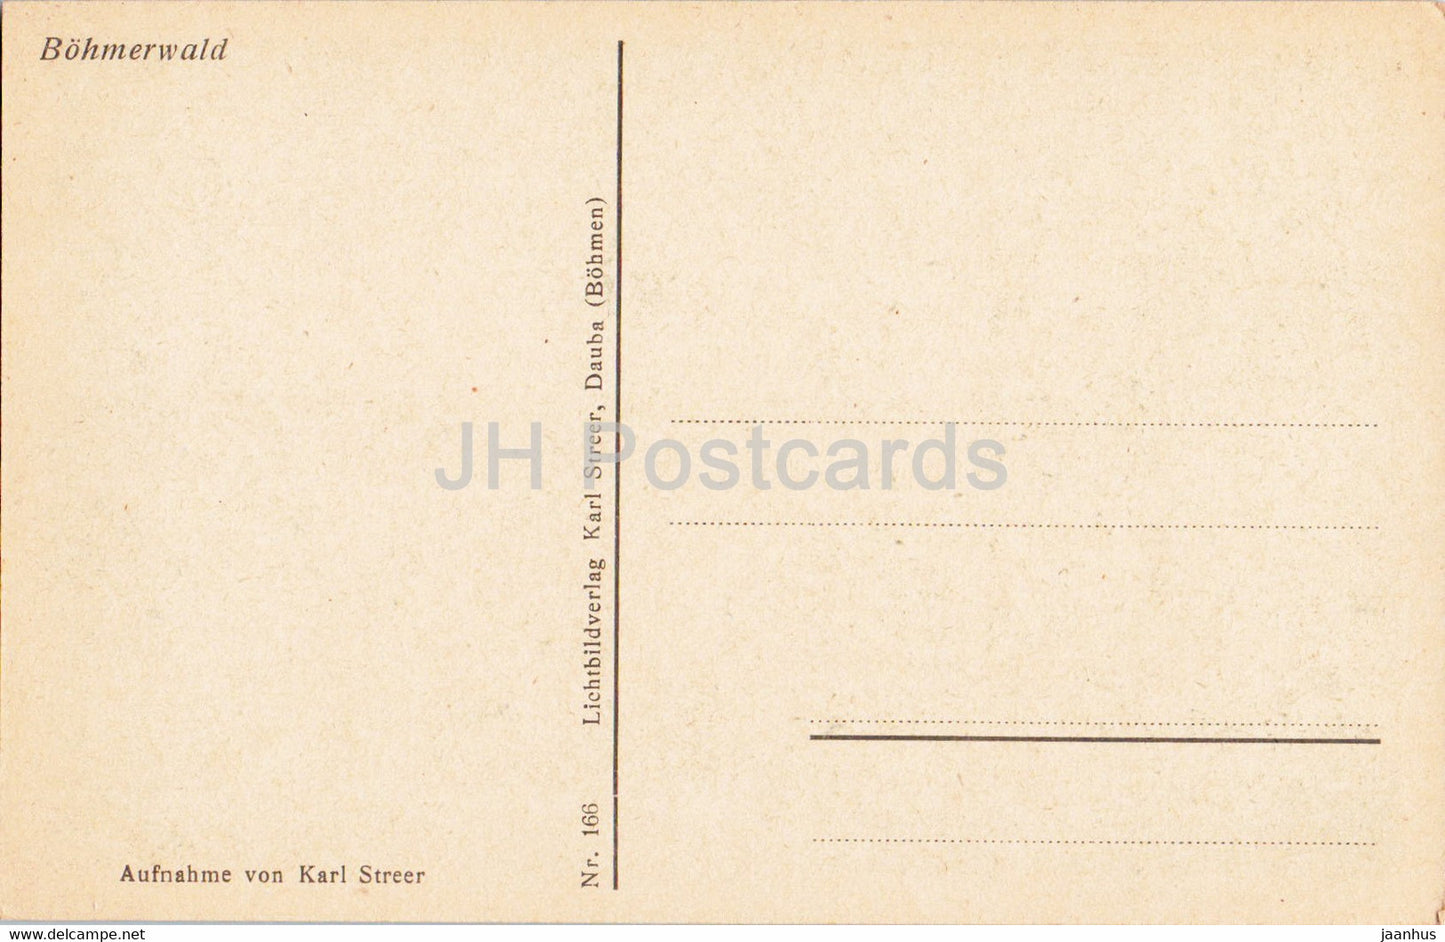 Urwald am Kubany - Bohmerwald - old postcard - Czech Republic - unused